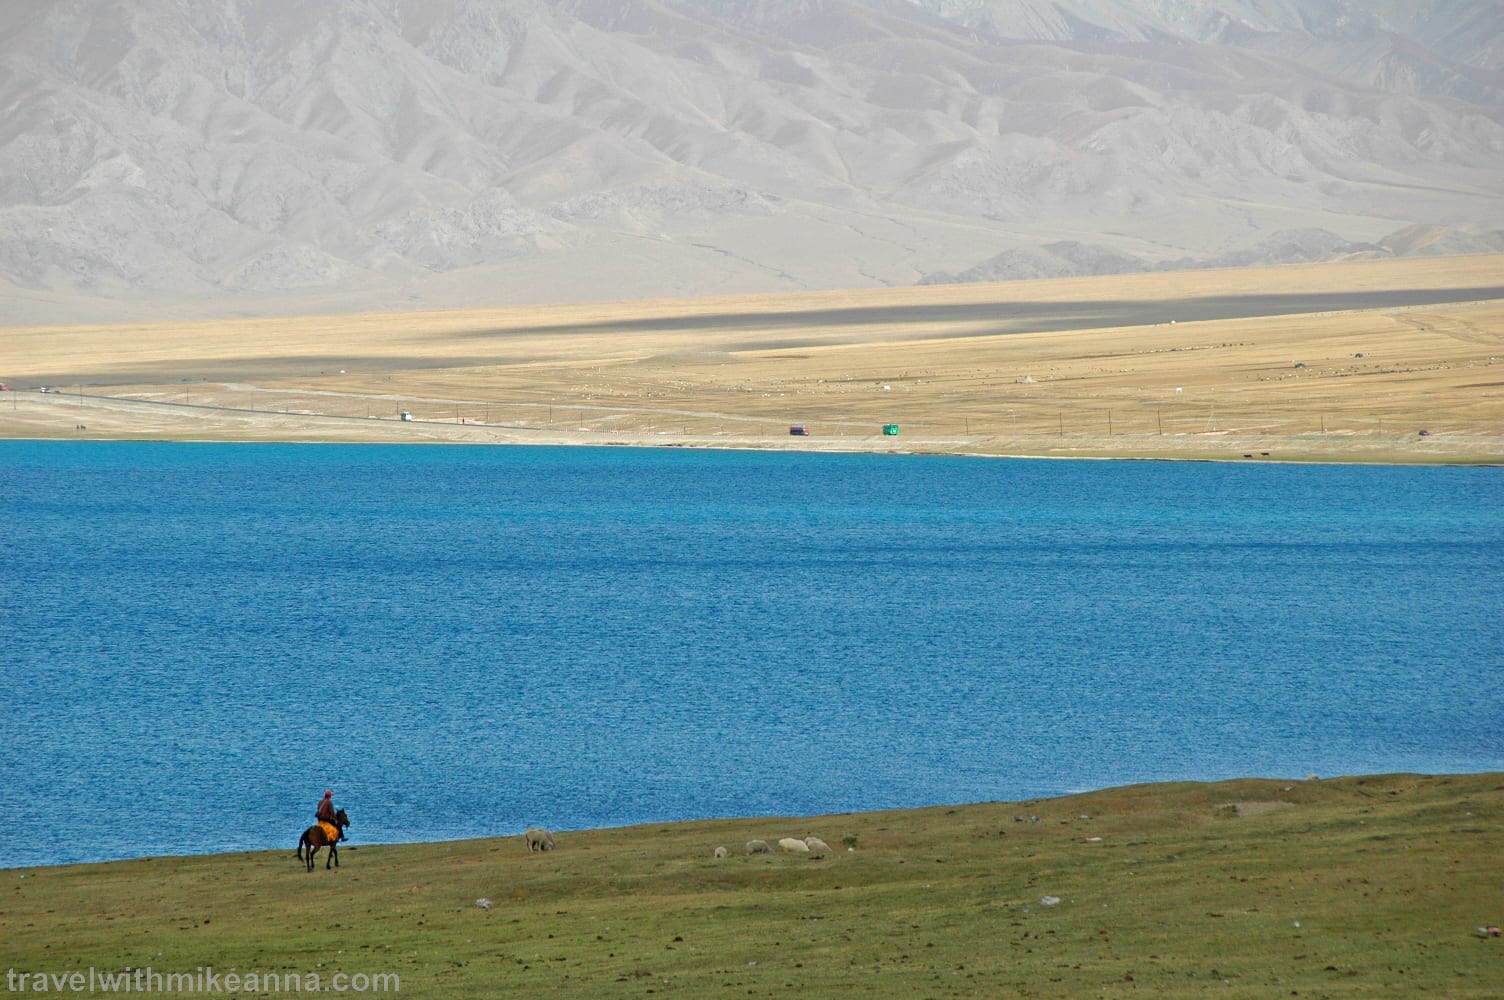 賽里木湖 中國 新疆 北疆 旅遊 攝影 照片 遊記 china xinjiang photo photography travel